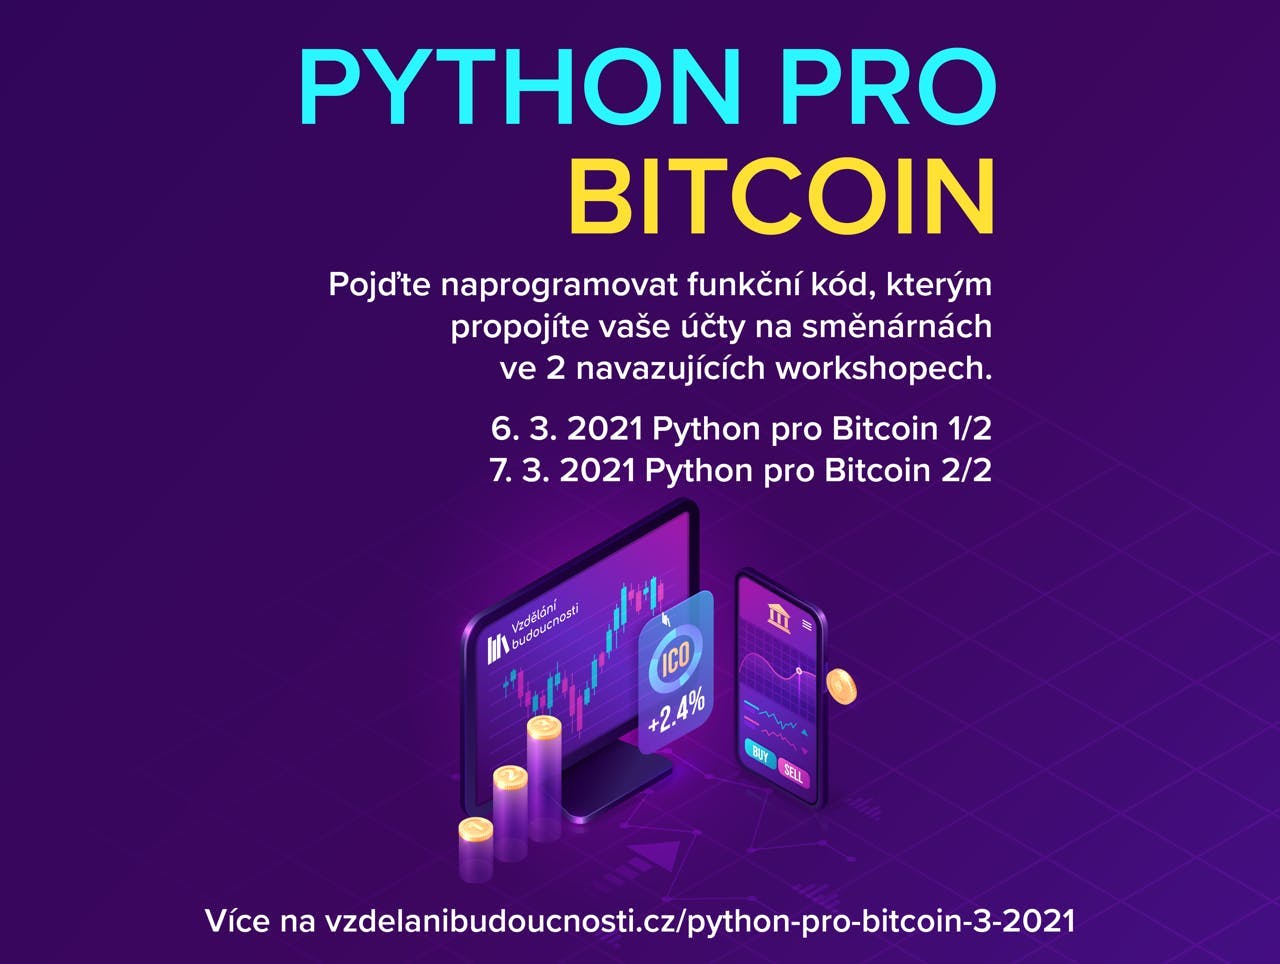 Přihláška - Python pro Bitcoin 1/2